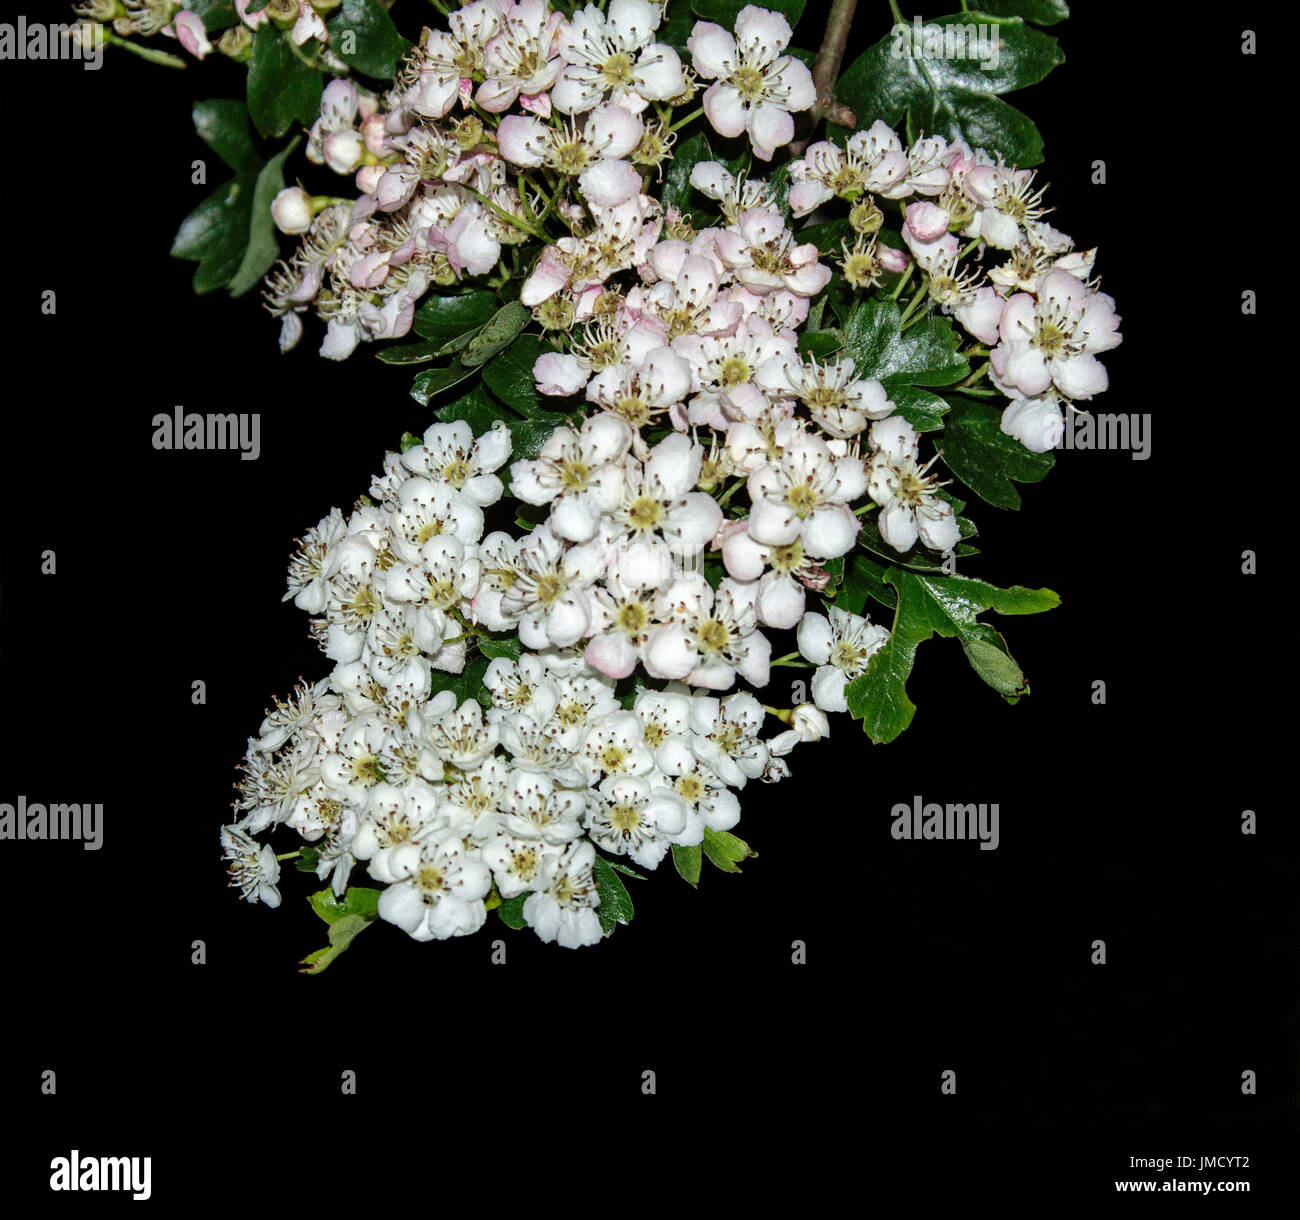 Grappe de fleurs blanches parfumées de l'Aubépine, Crataegus monogyna (fleurs sauvages, sur fond noir Banque D'Images